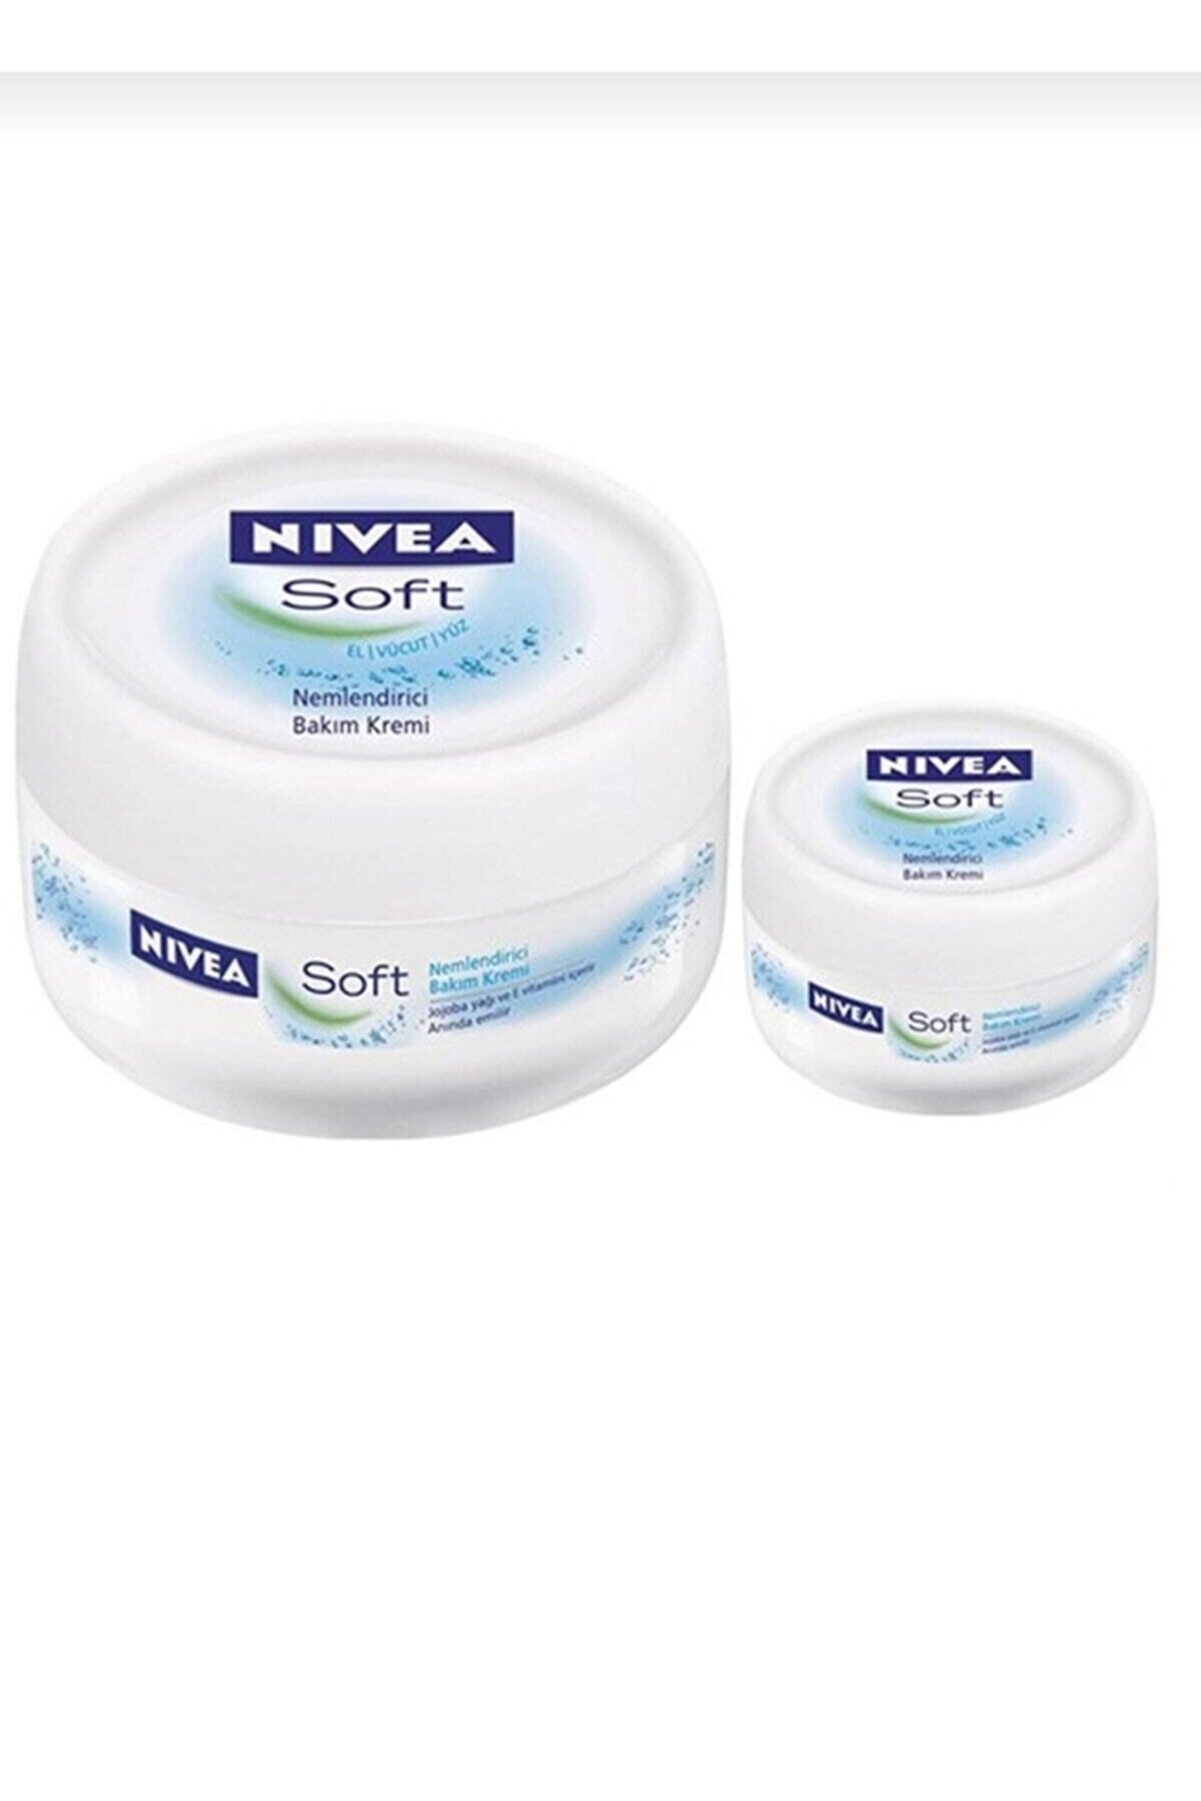 NIVEA Soft 300 ml + 50 ml Nemlendirici Bakım Kremi